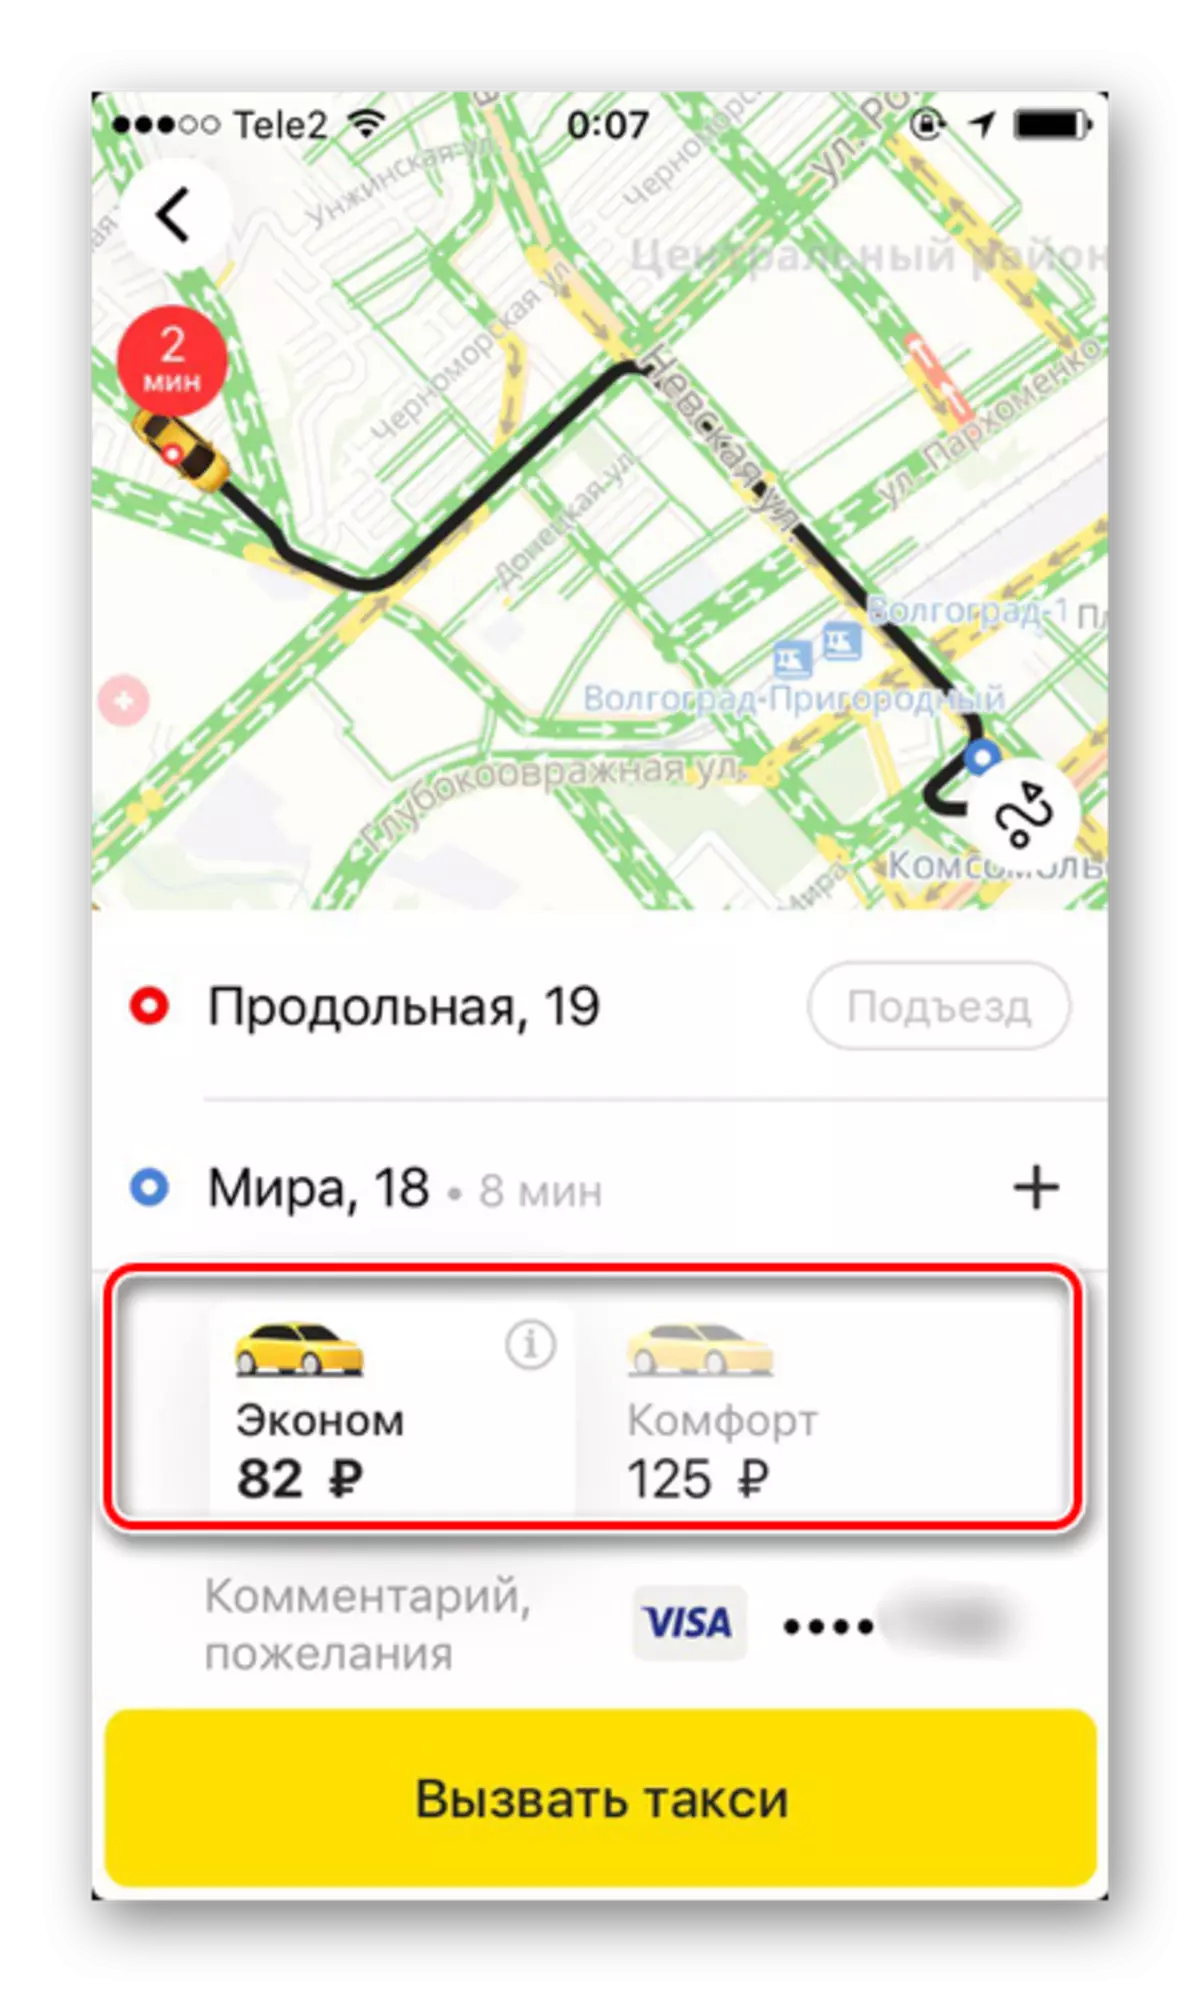 Lacag-bixinnada la heli karo markii la dalbaday taksi ku saabsan dalabka Yandex.taxi ee iPhone